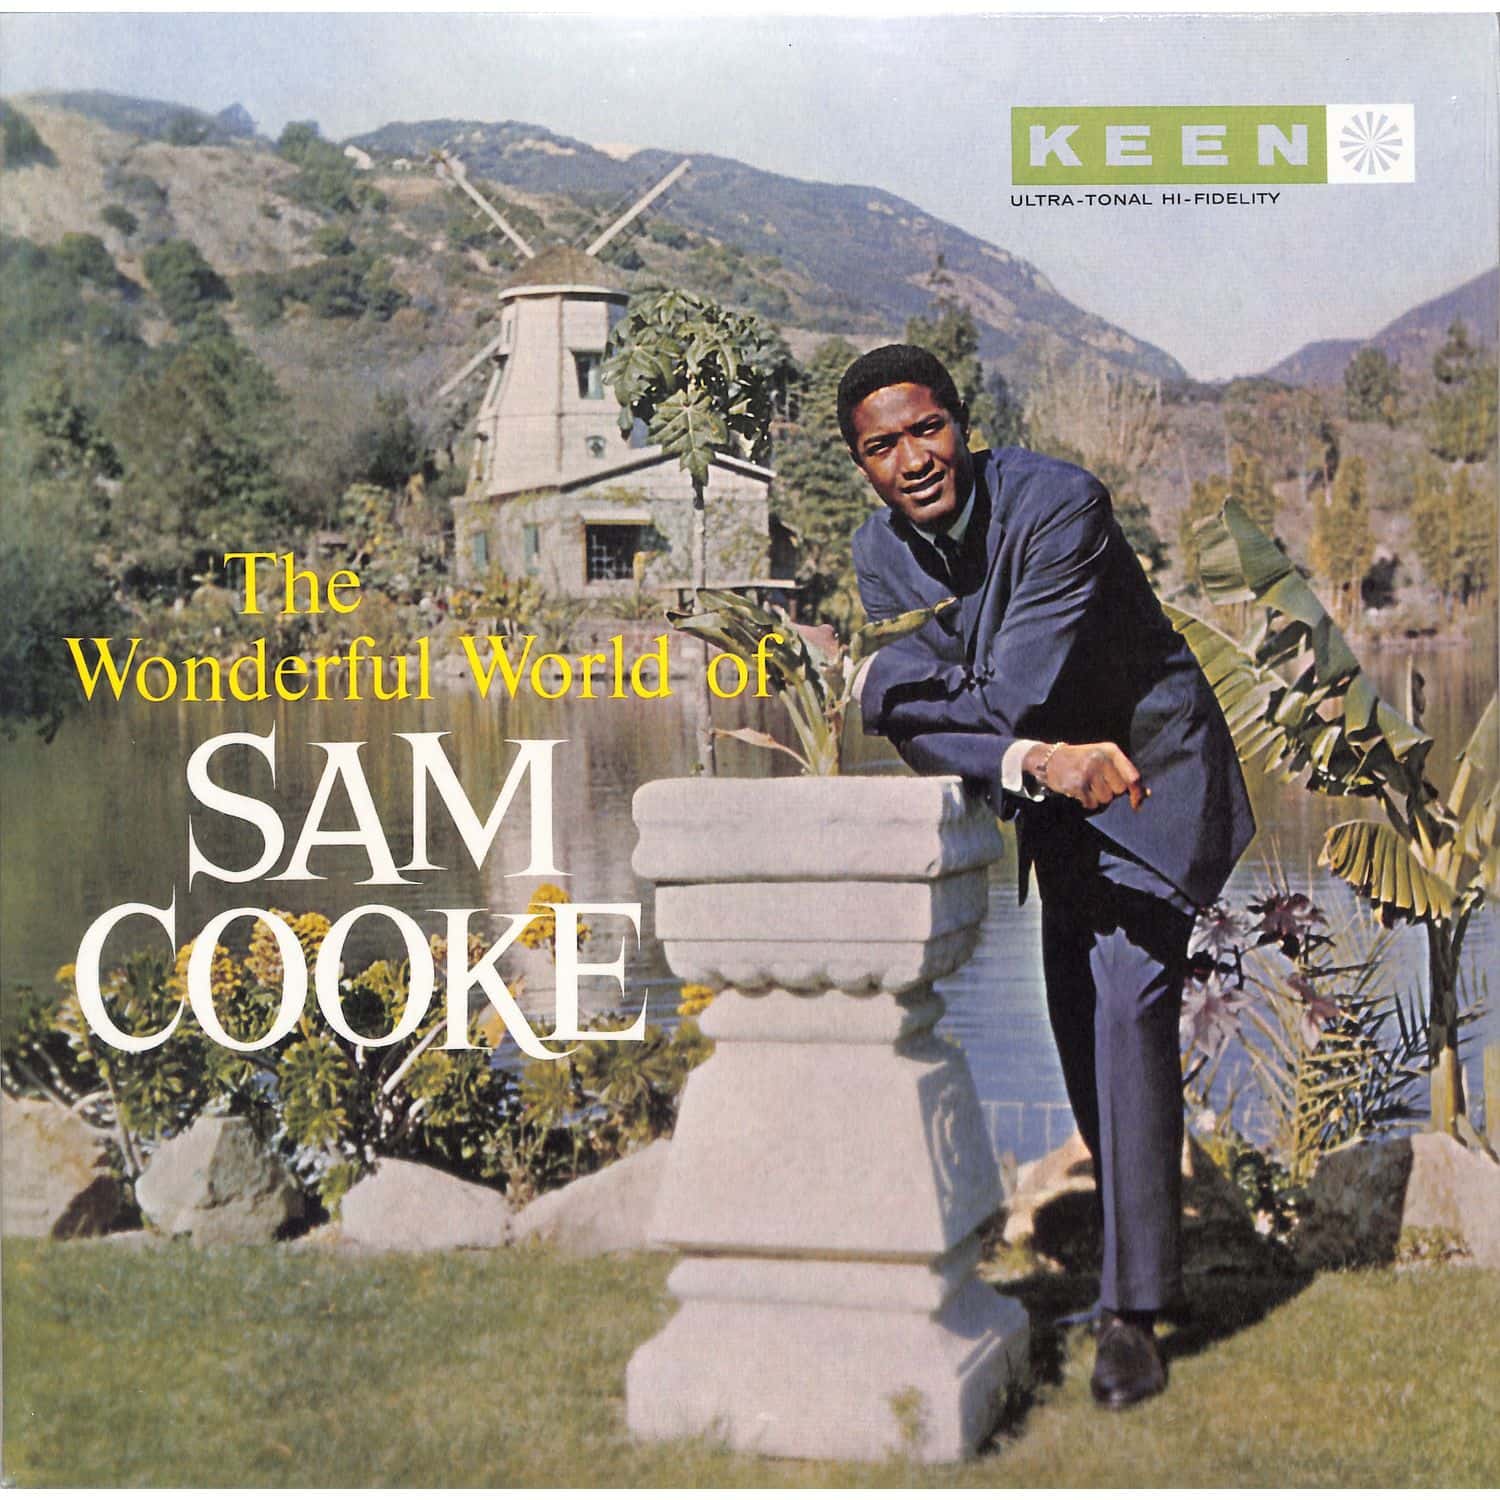 Sam Cooke - THE WONDERFUL WORLD OF SAM COOKE 